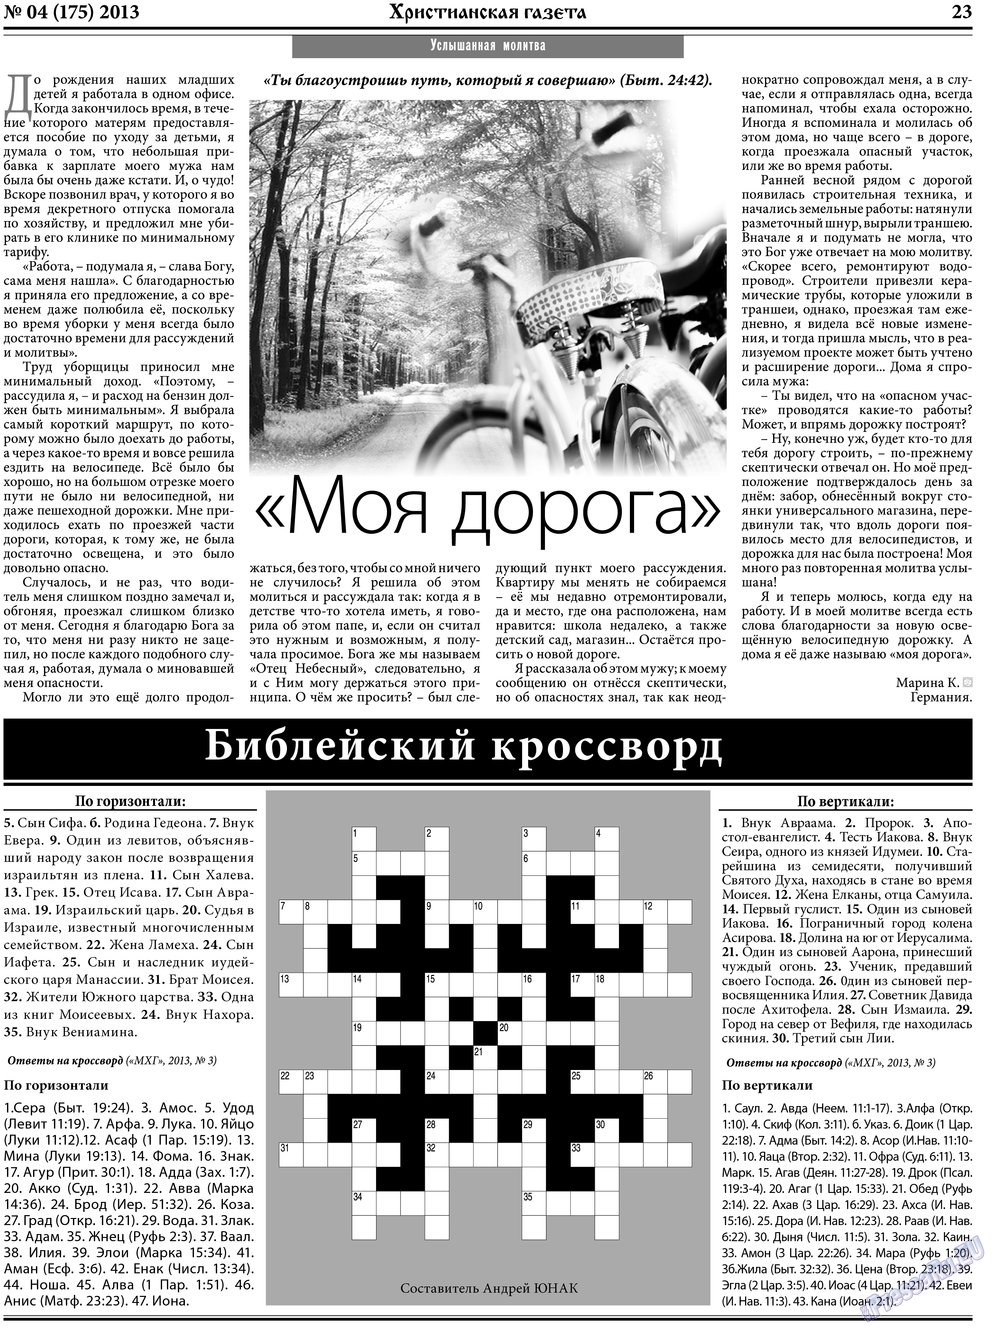 Христианская газета (газета). 2013 год, номер 4, стр. 31